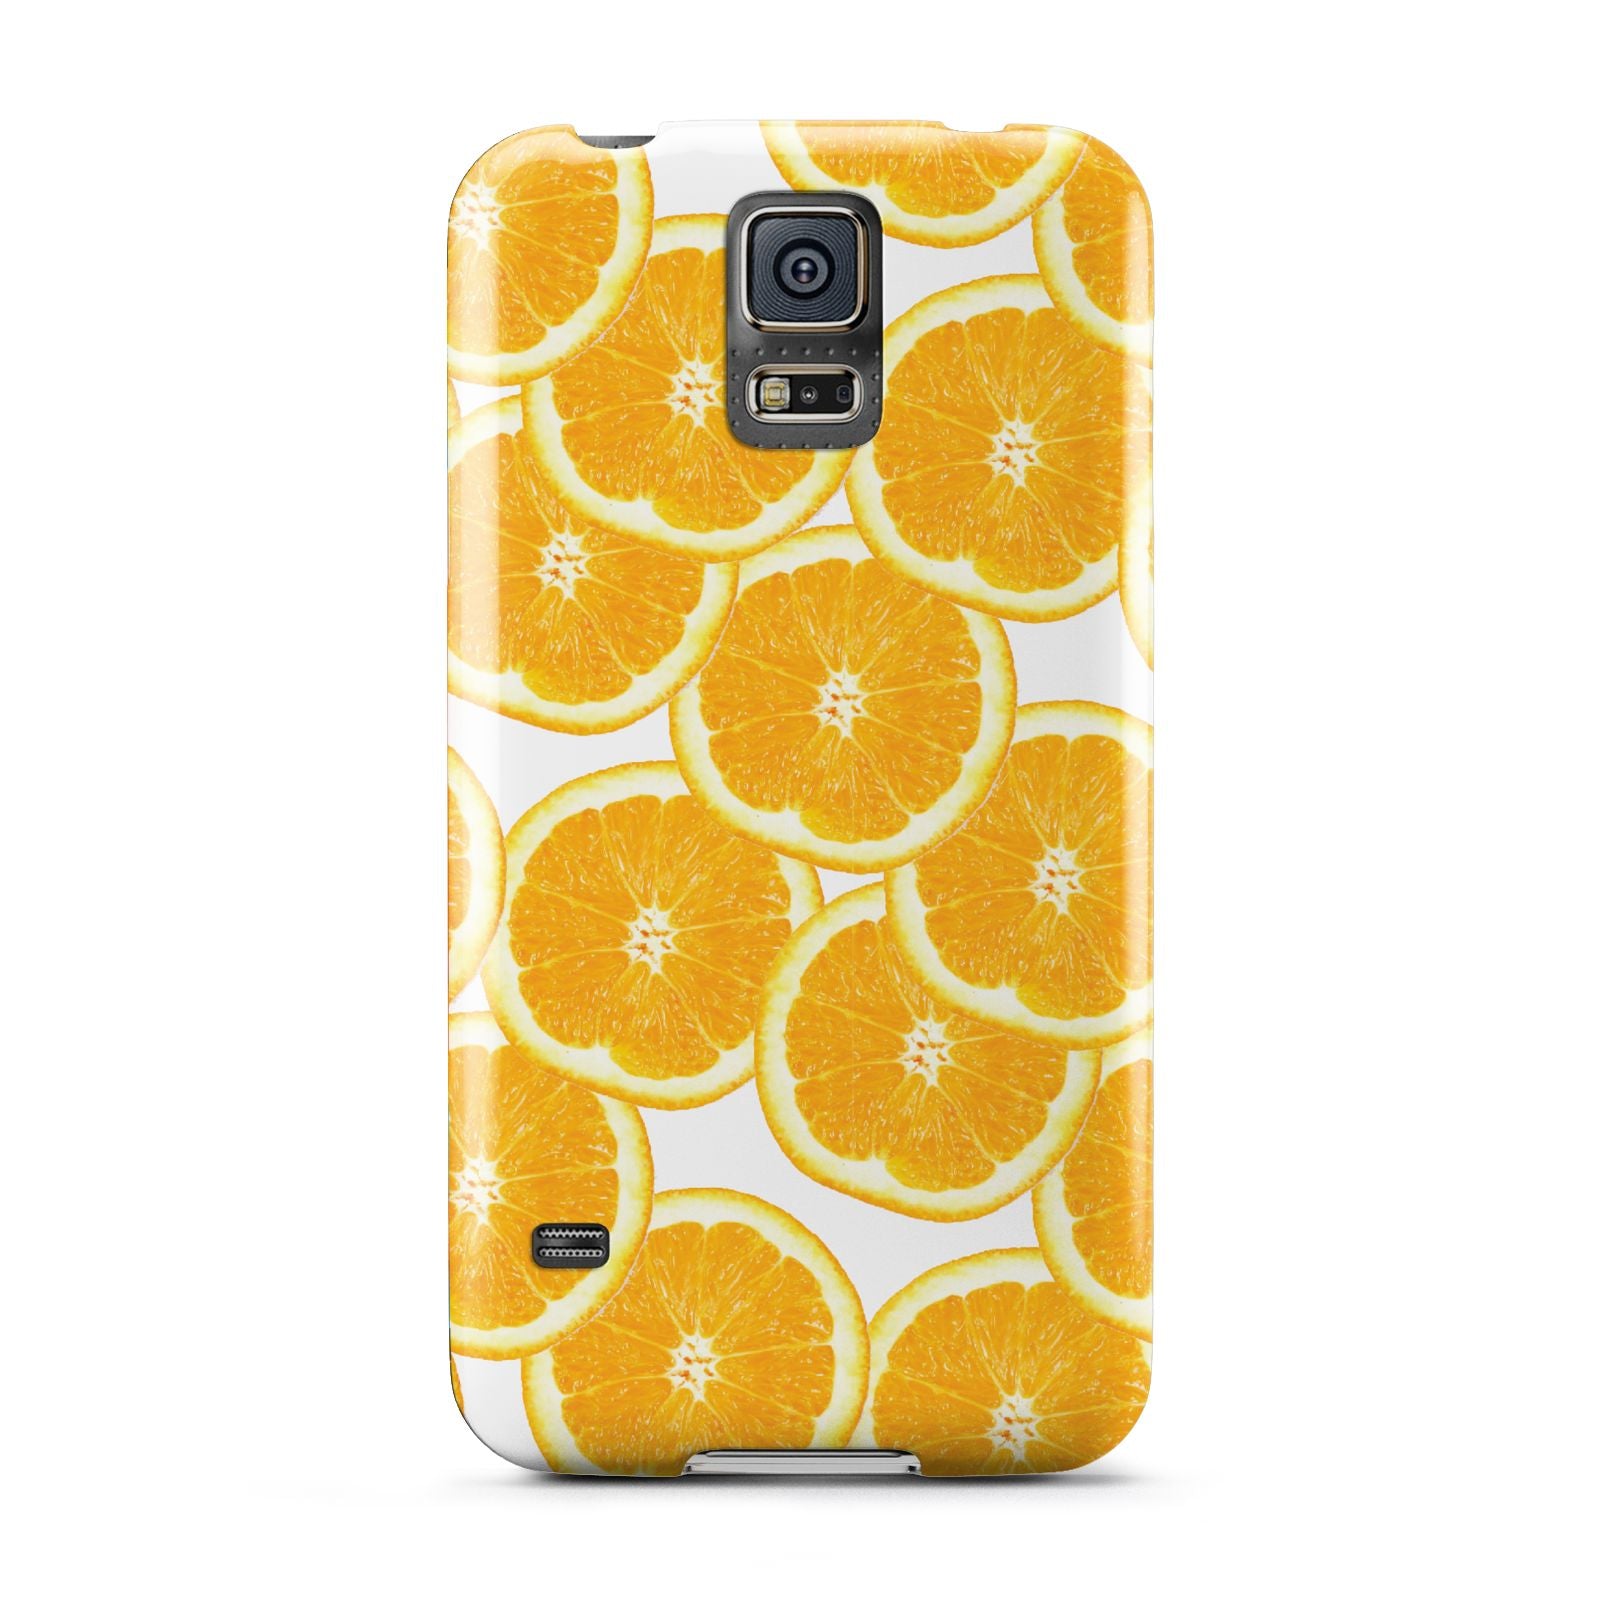 Orange Fruit Slices Samsung Galaxy S5 Case